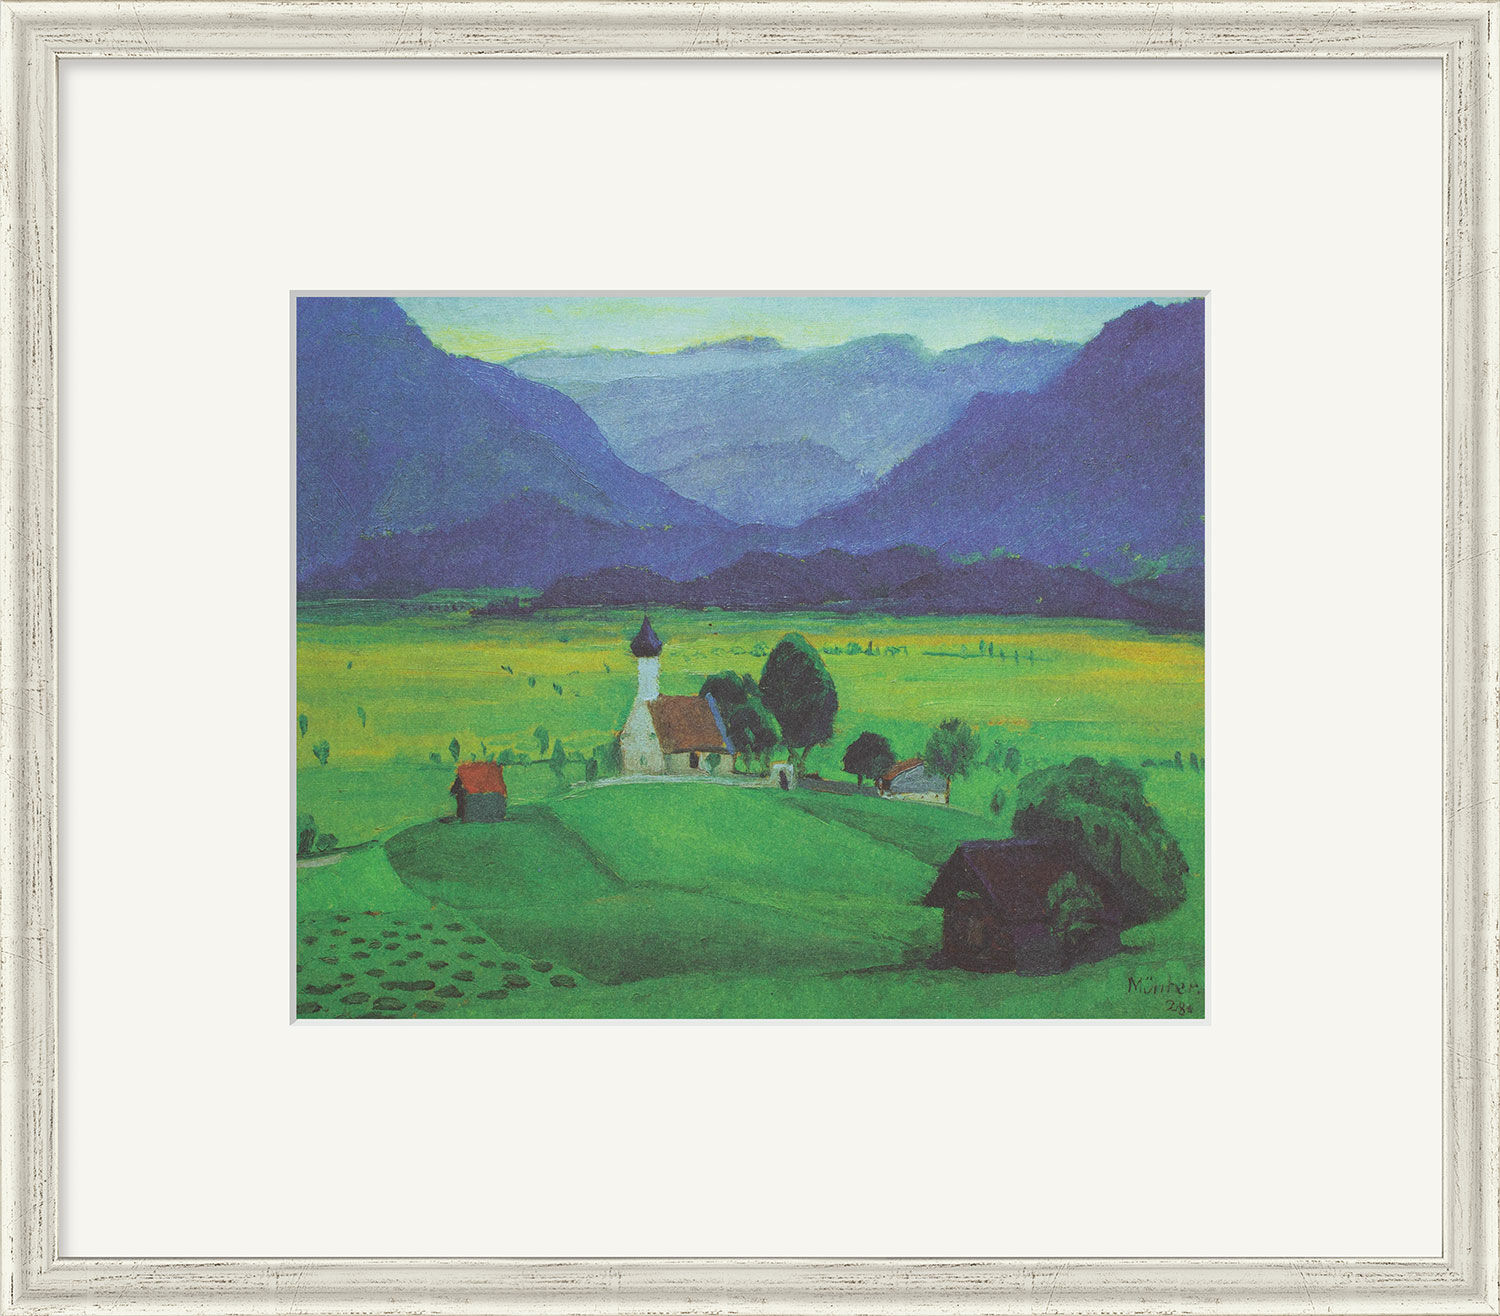 Beeld "Ramsach kerk" (1928), ingelijst von Gabriele Münter